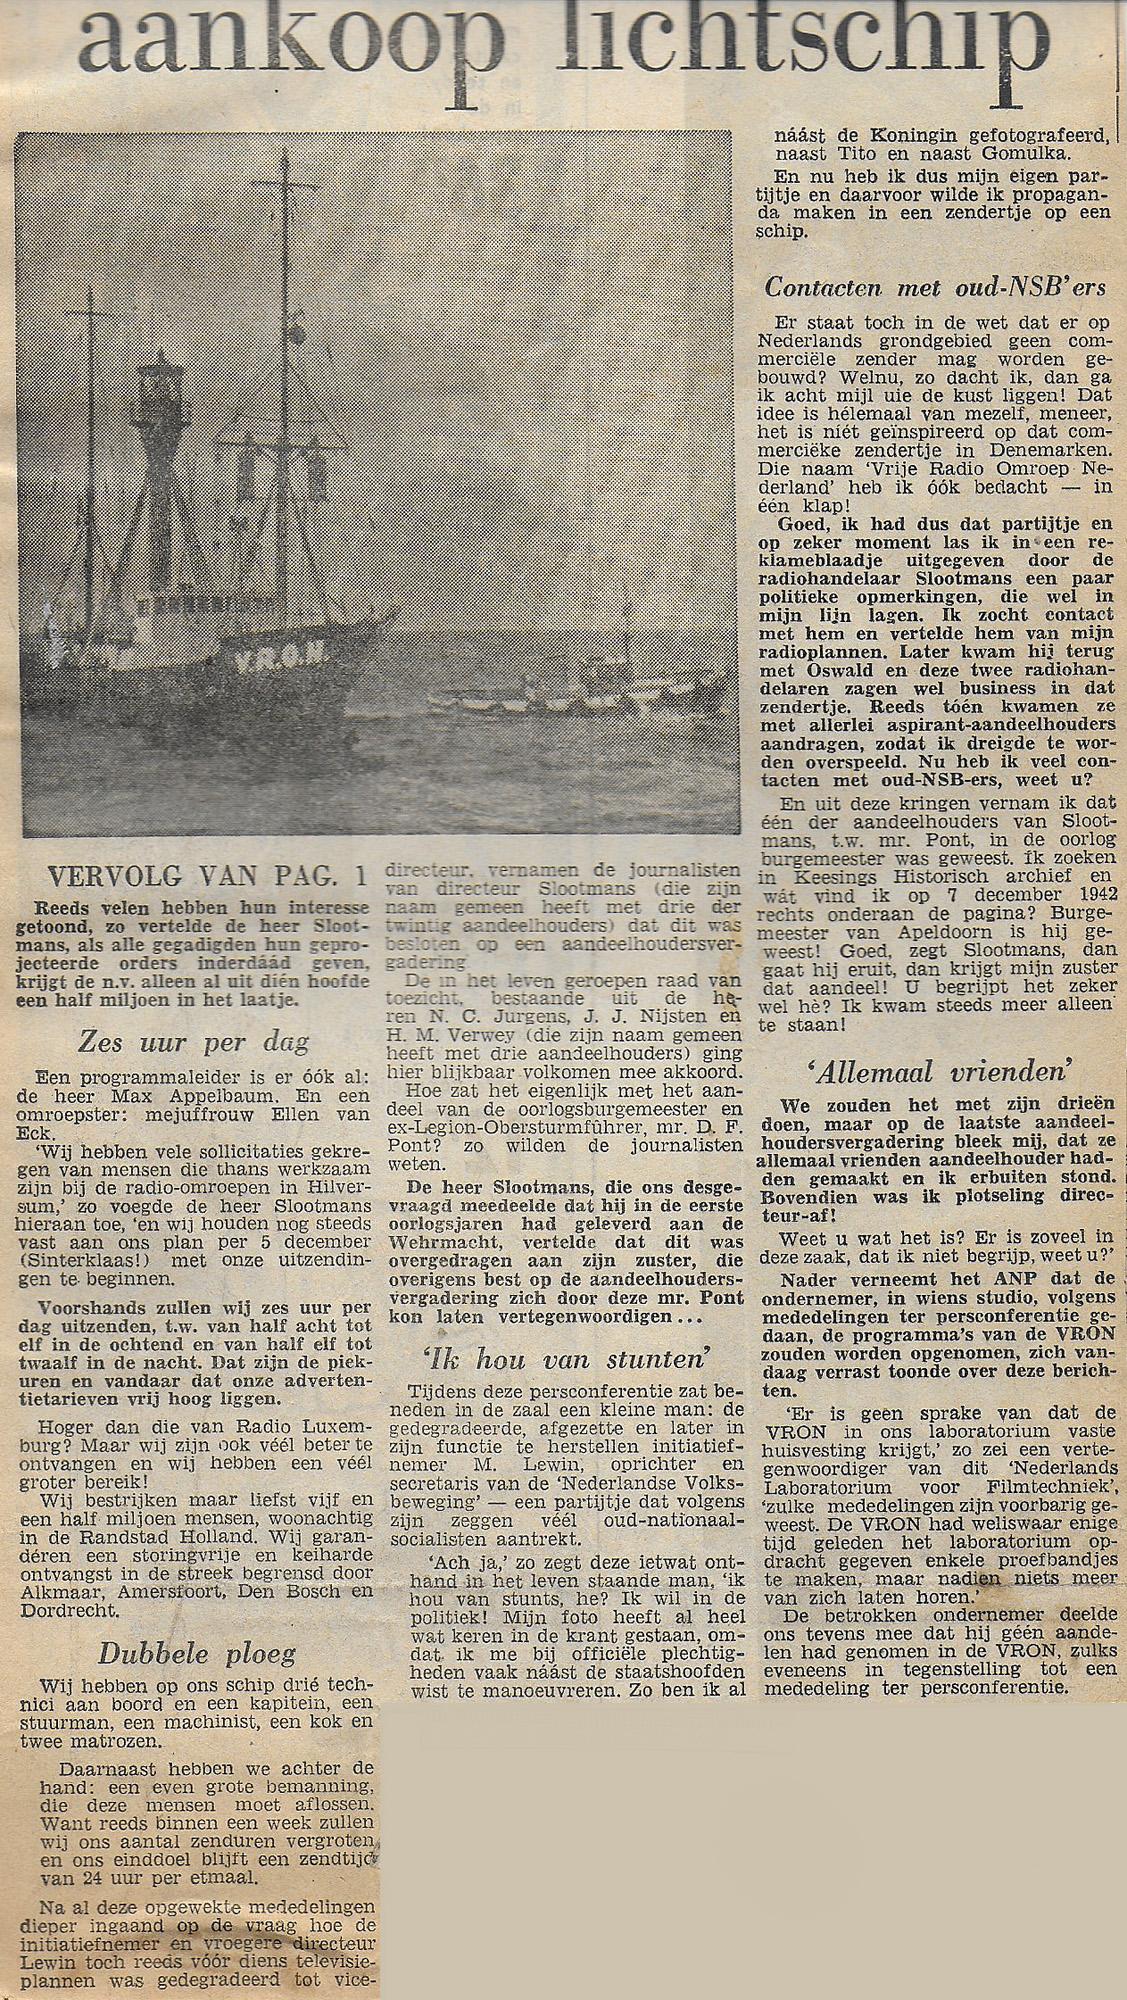 19591113 Vrije Volk Aankoop lichtschip.jpg